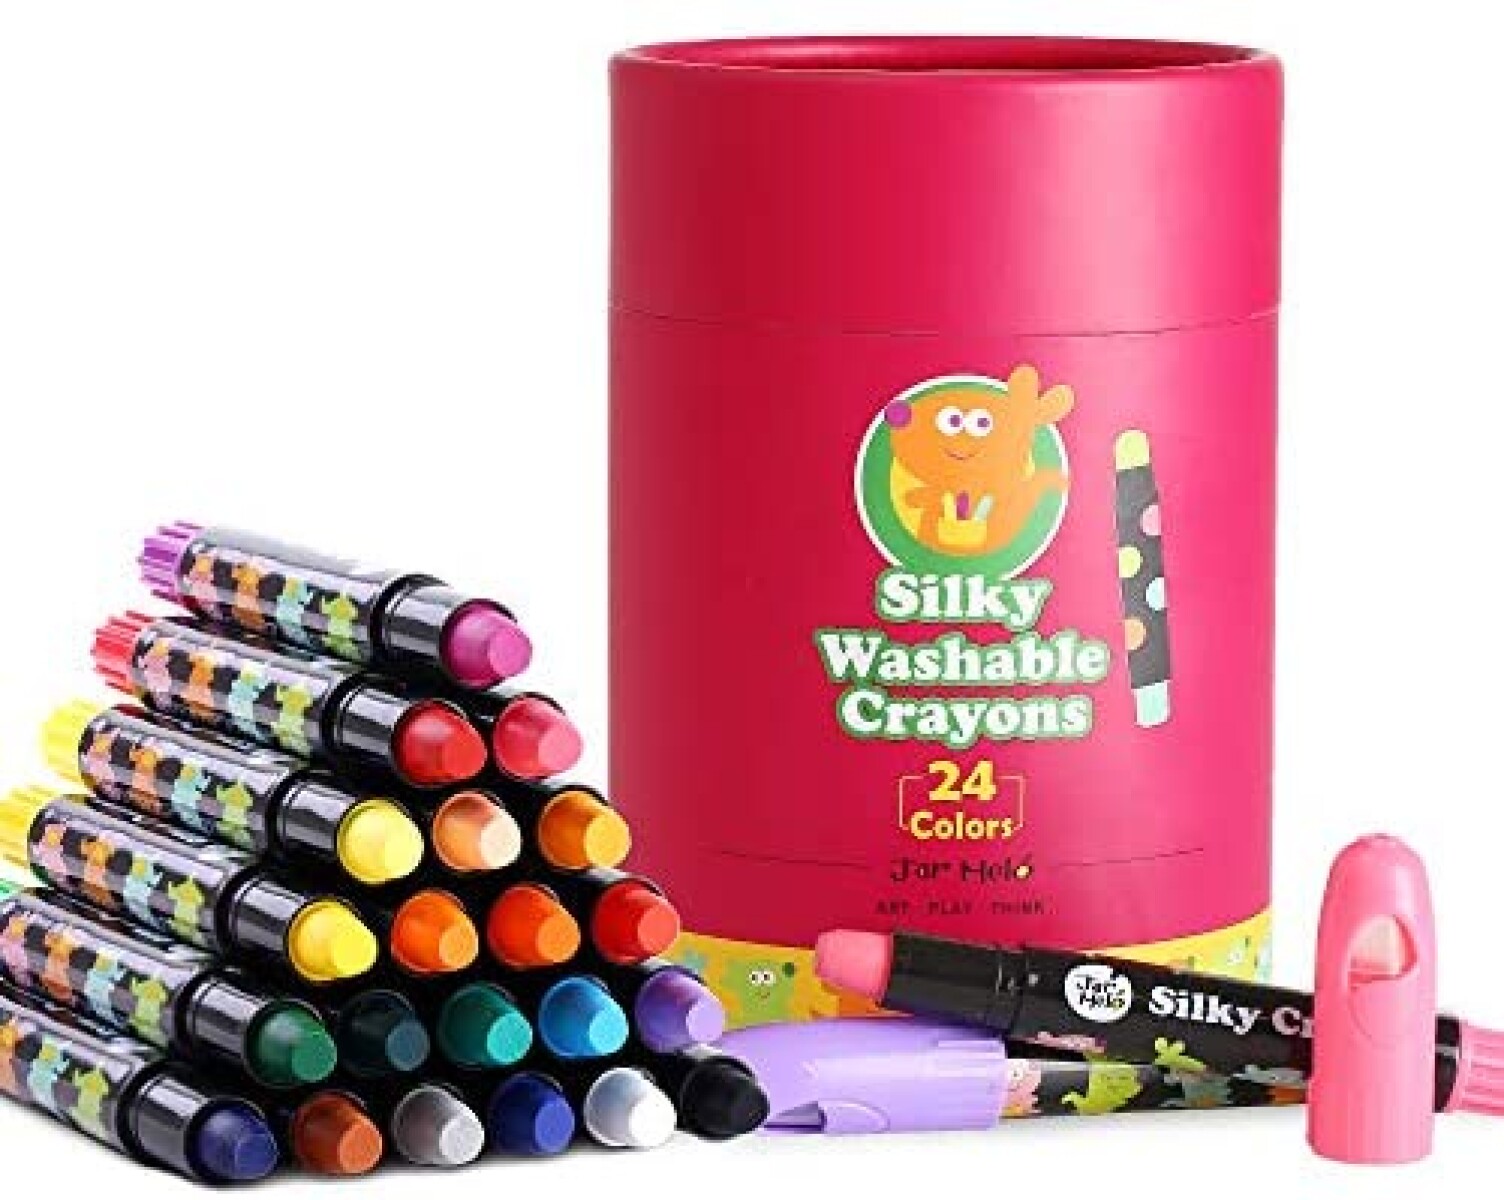 Kit de Crayolas Sedosas Lavables Silky Crayons 24 Colores - 001 